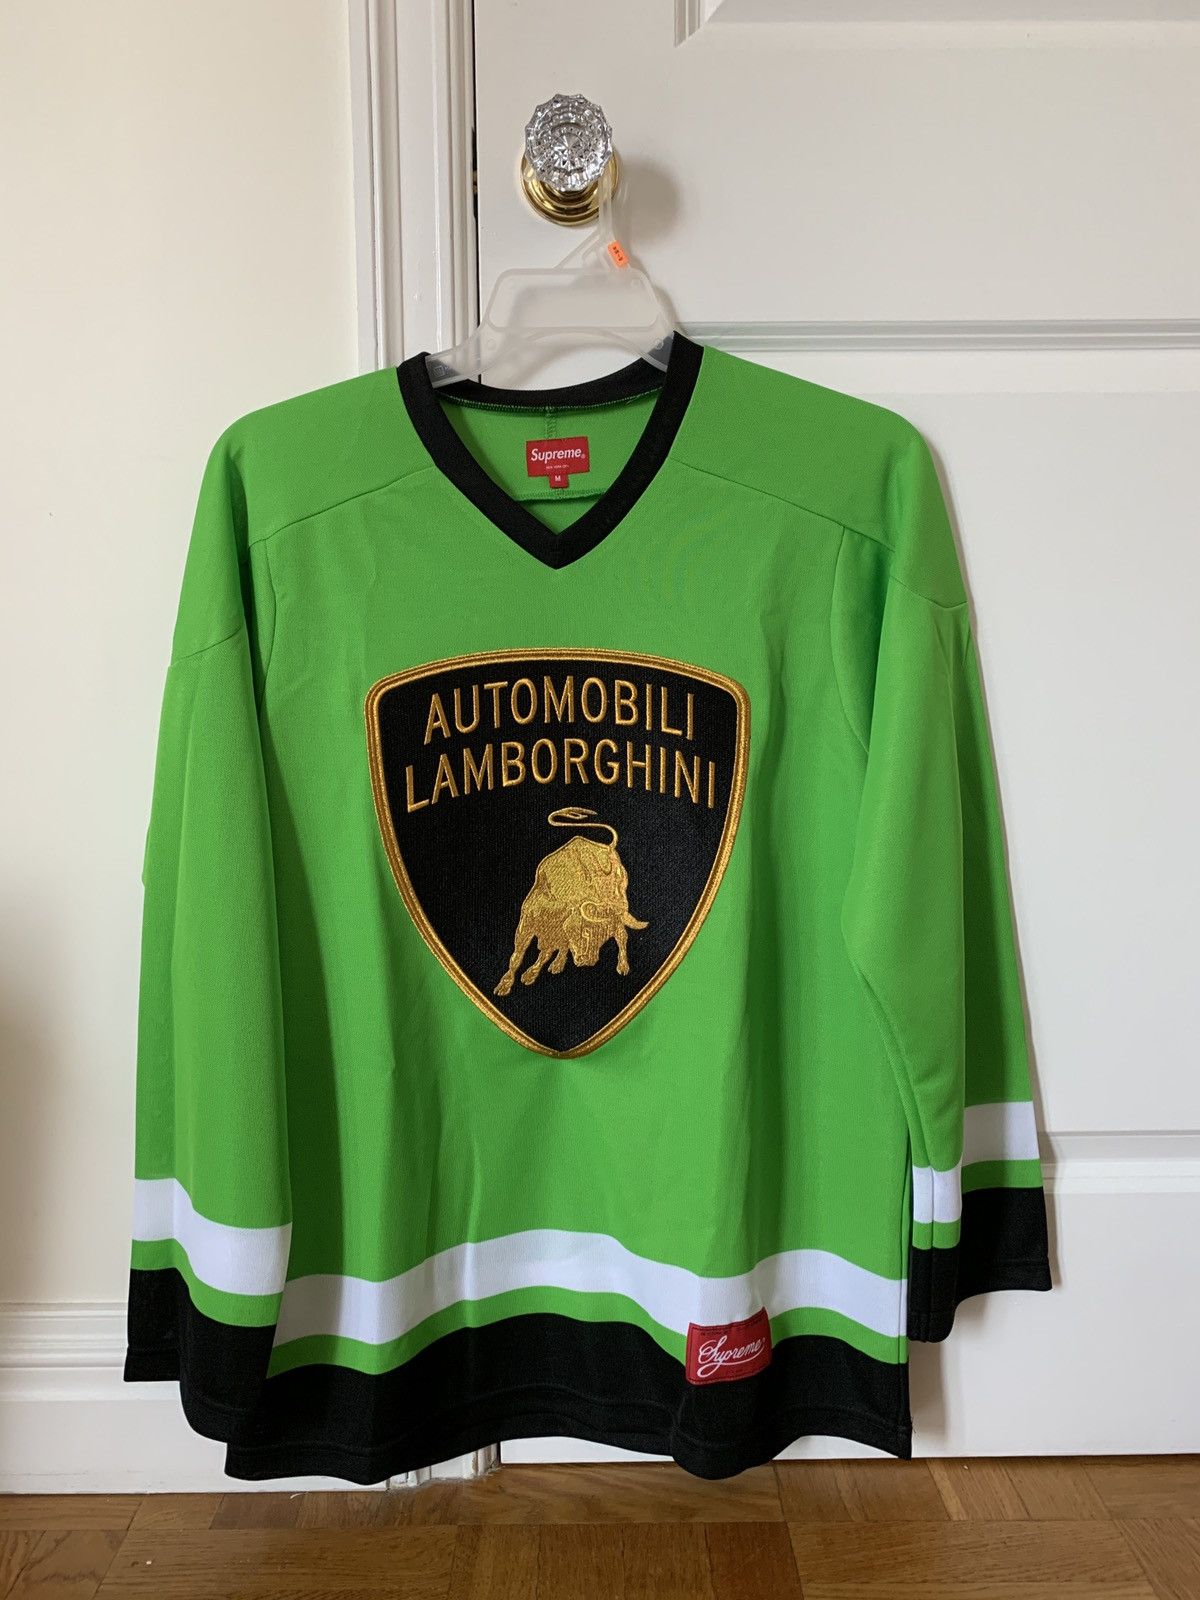 Supreme Supreme x Lamborghini Hockey Jersey | Grailed